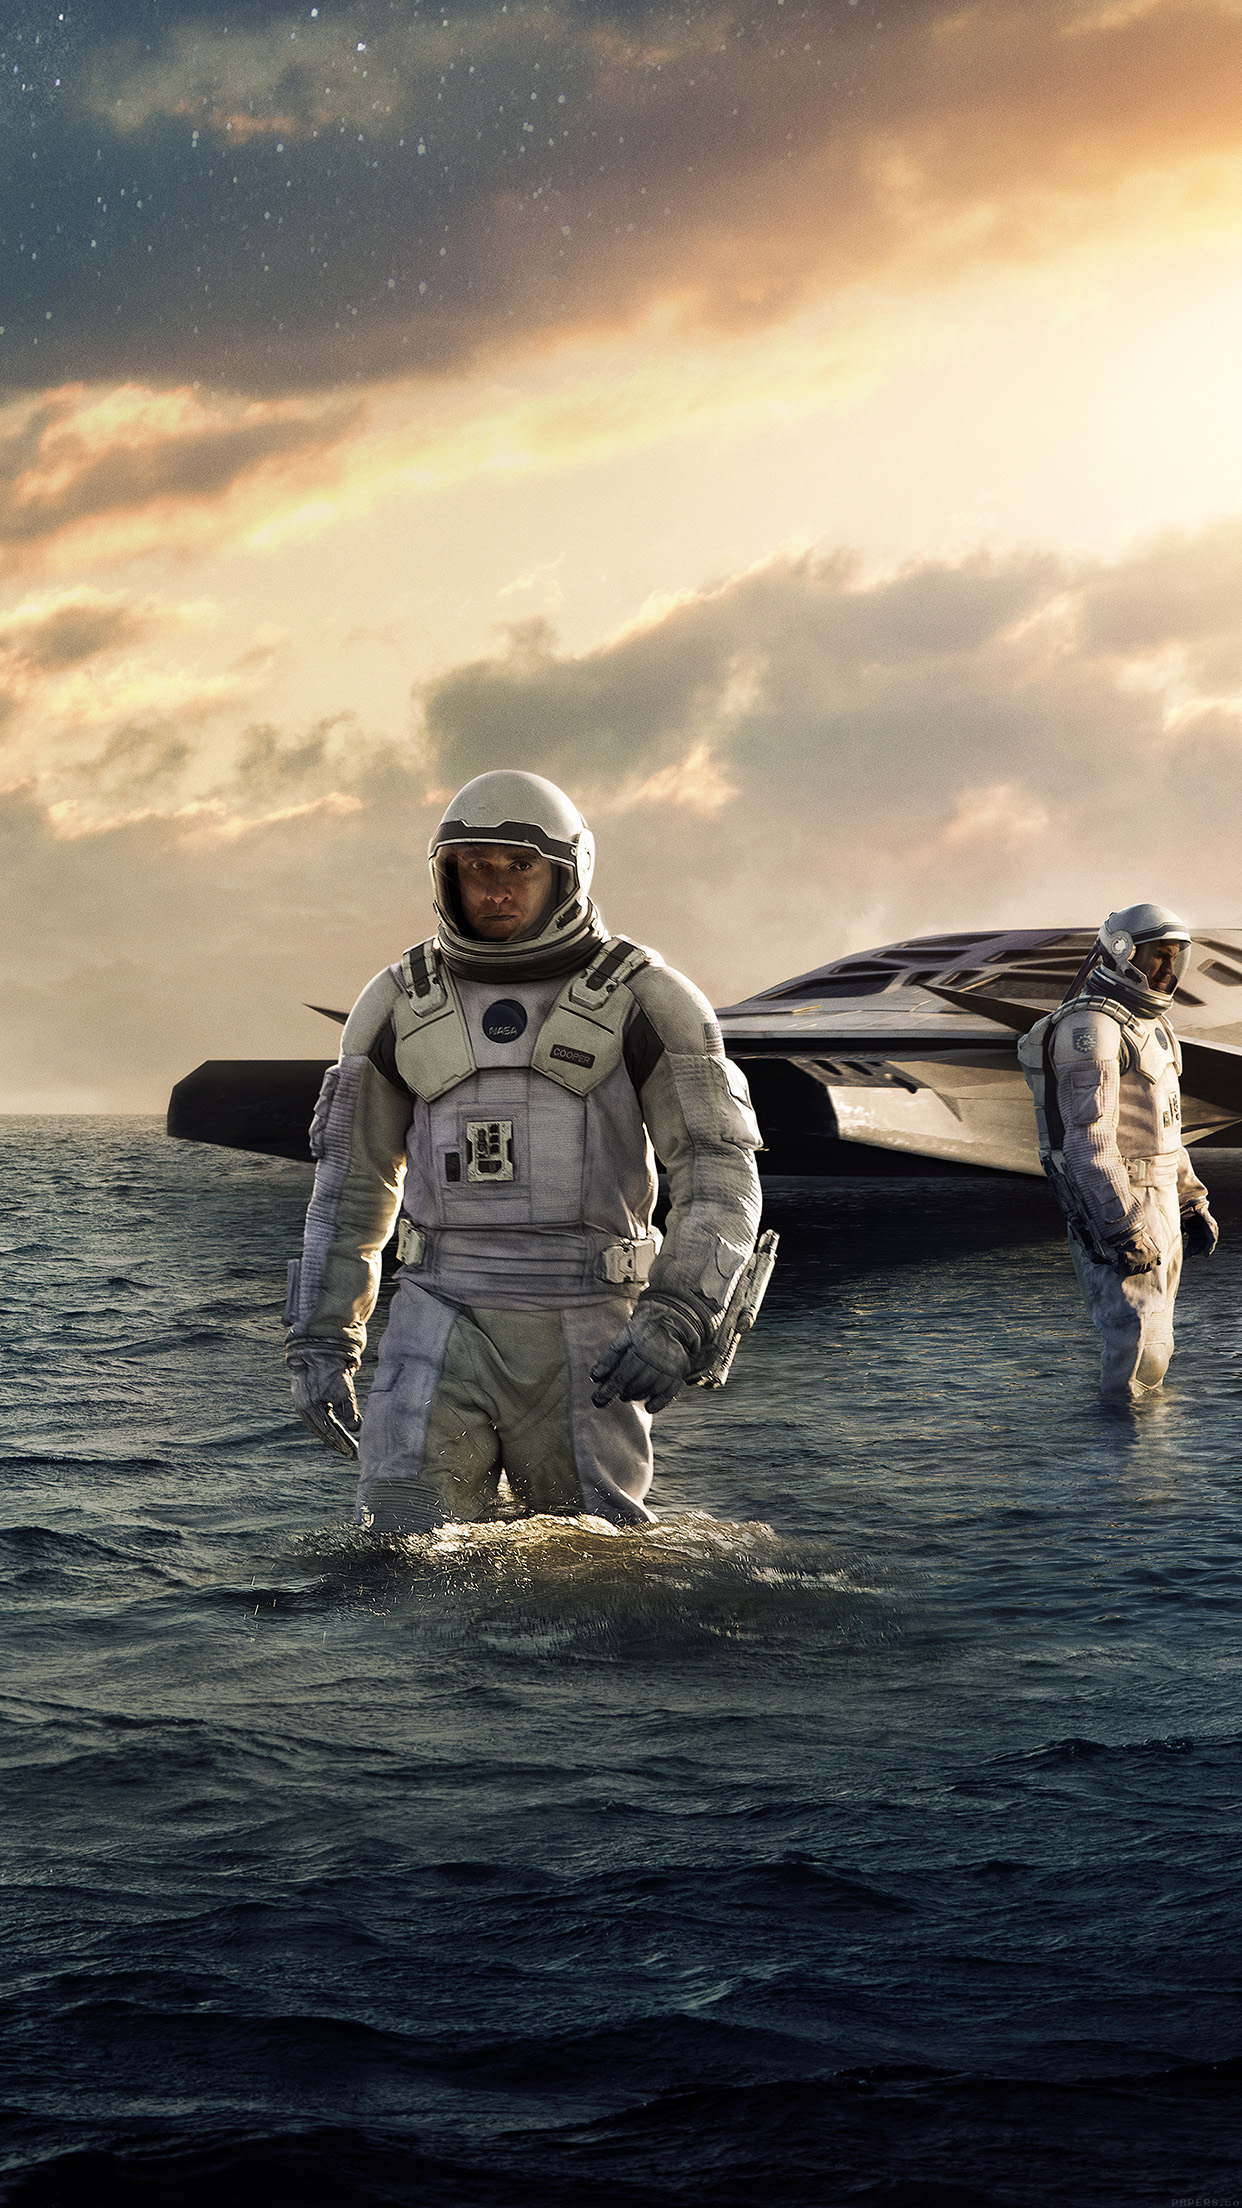 Interstellar Sea Film Space Art iPhone6 Plus Wallpaper Jpg